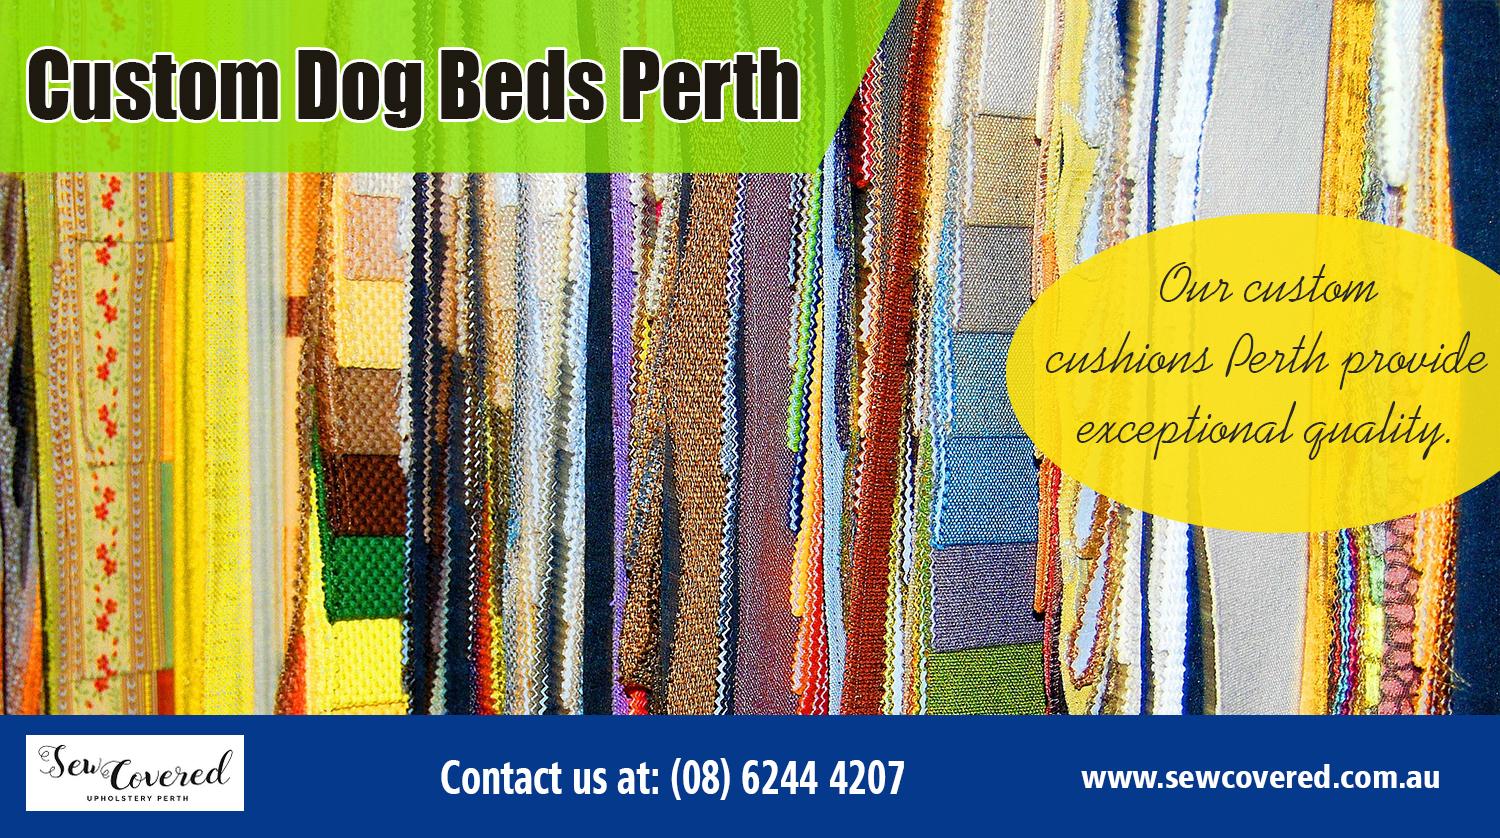 custom dog beds perth | http://sewcovered.com.au/